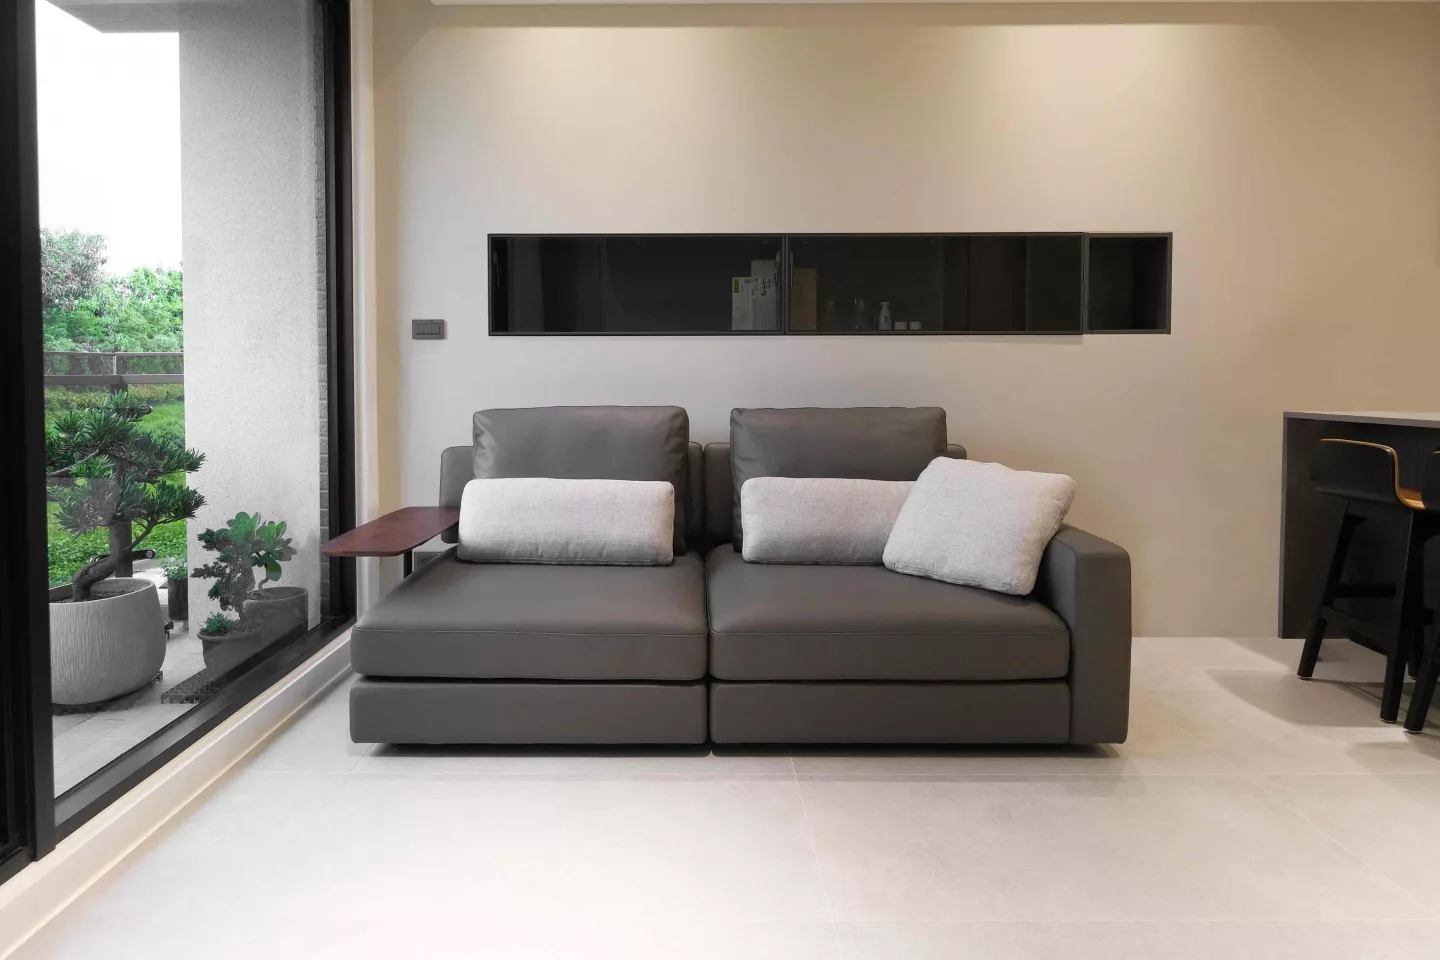 灰色三人沙發全牛皮材質搭配亞麻布料靠枕擺放於客廳